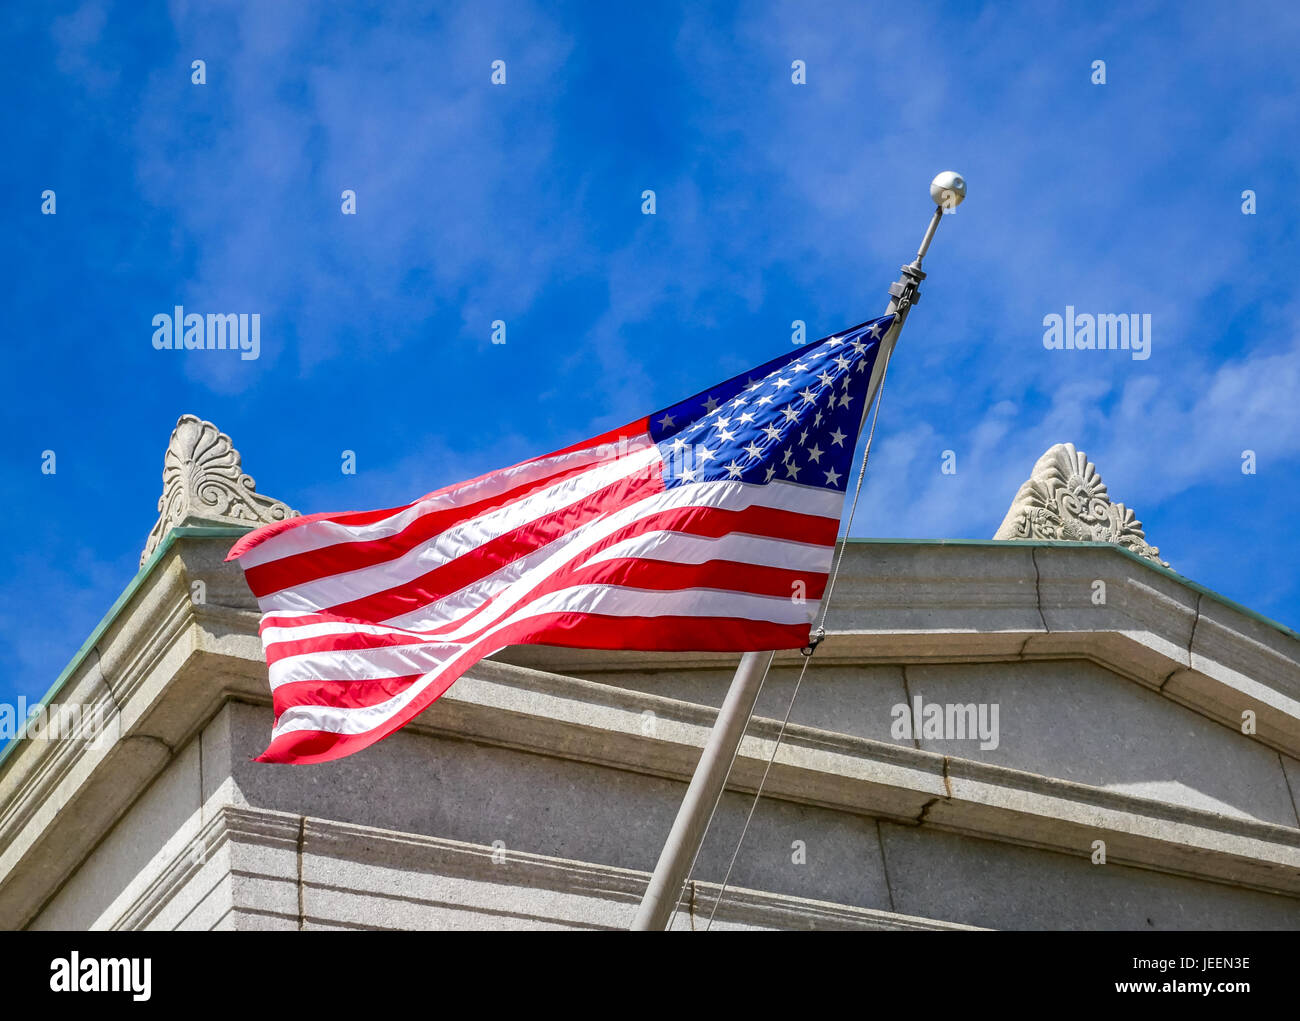 Close up of American flag fluttering against blue sky, Bunker Hill monument, Charlestown, Boston, Massachusetts, USA Stock Photo